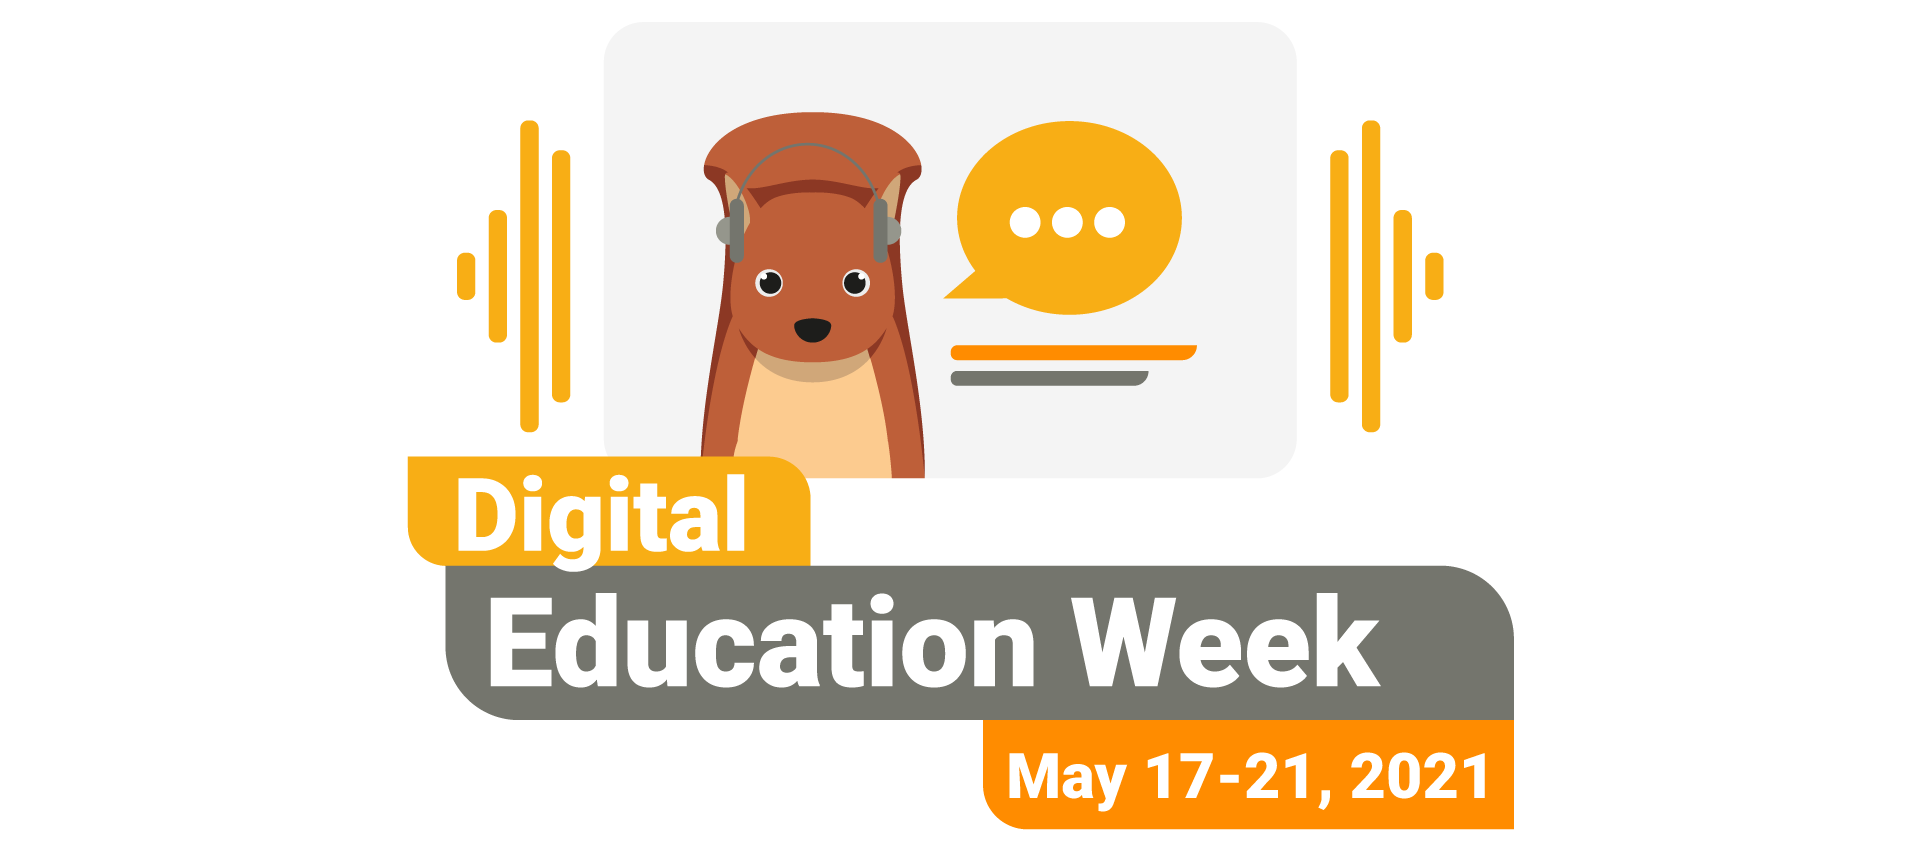 Digital Education Week